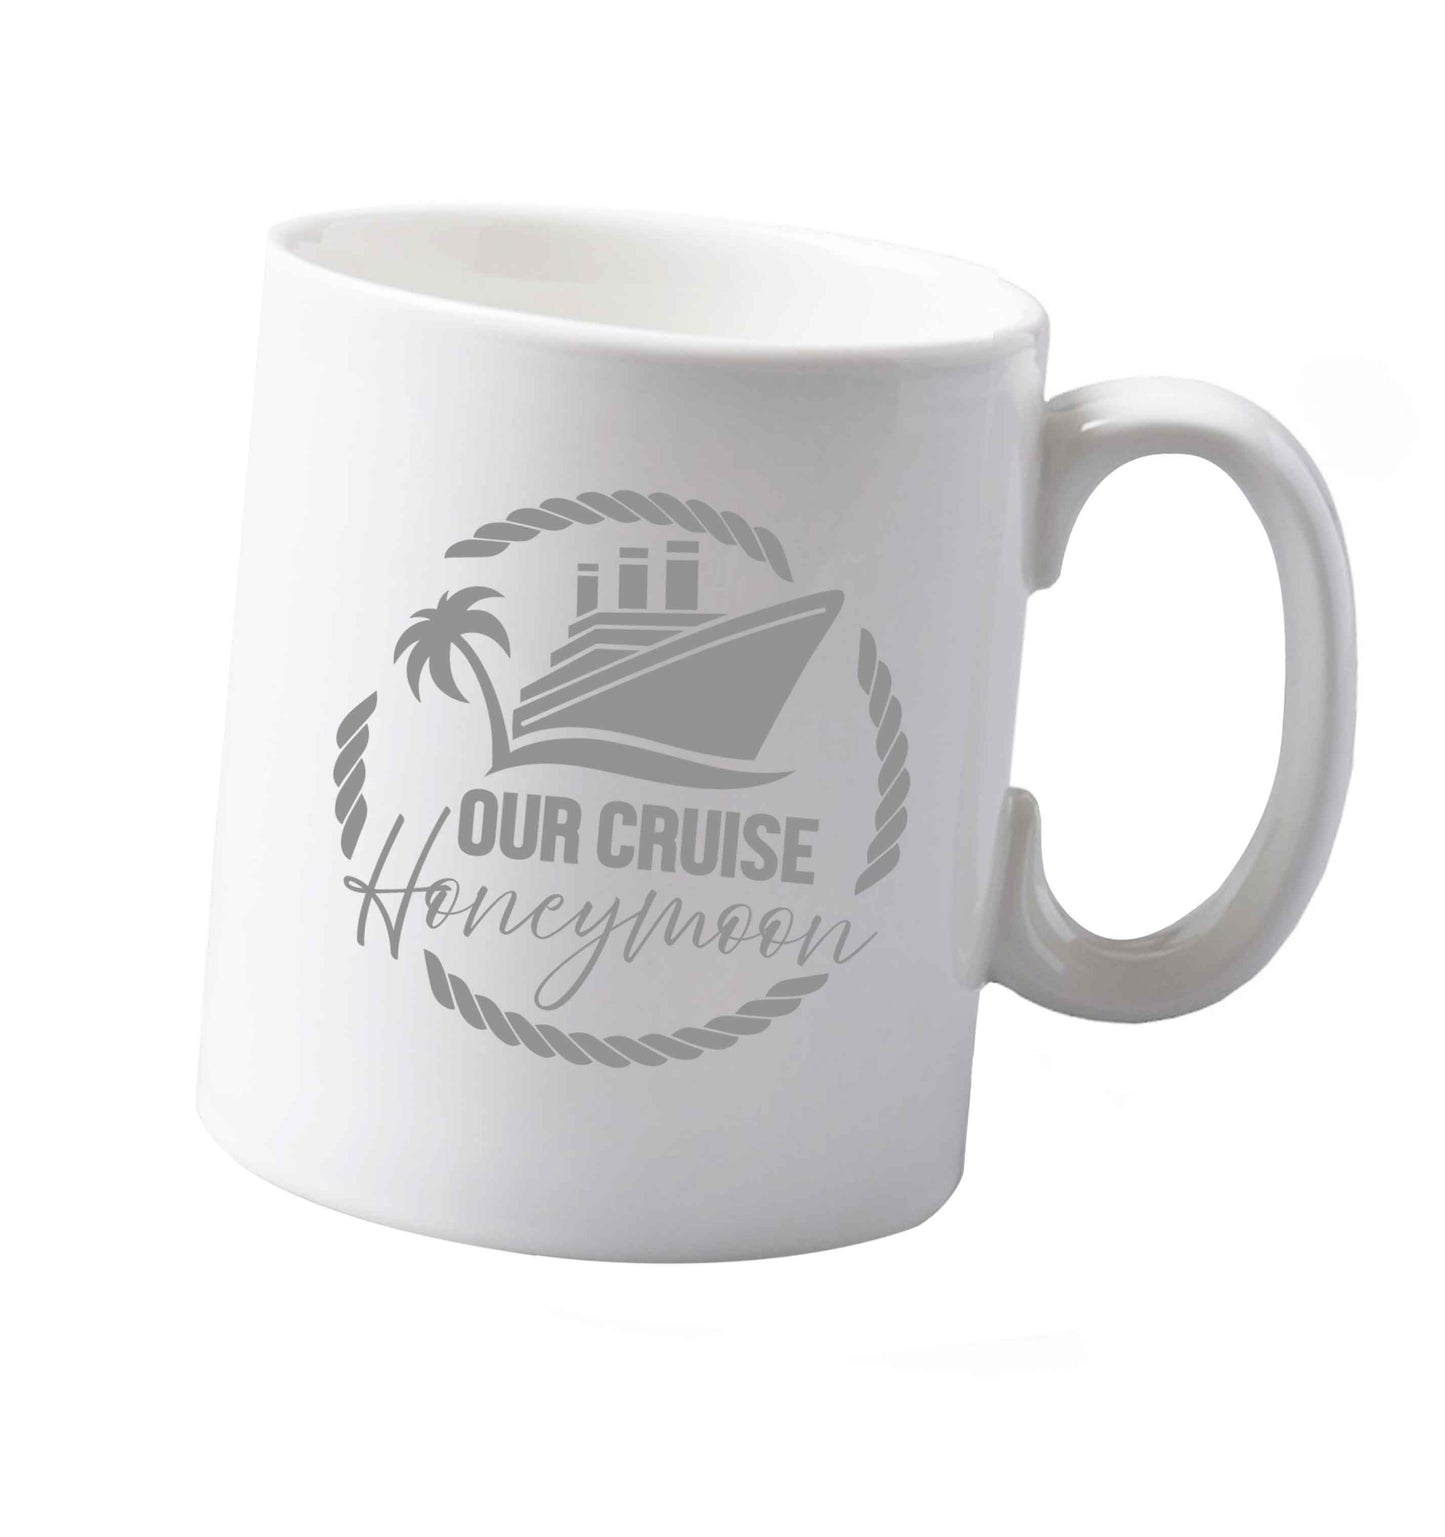 10 oz Our cruise honeymoon ceramic mug both sides